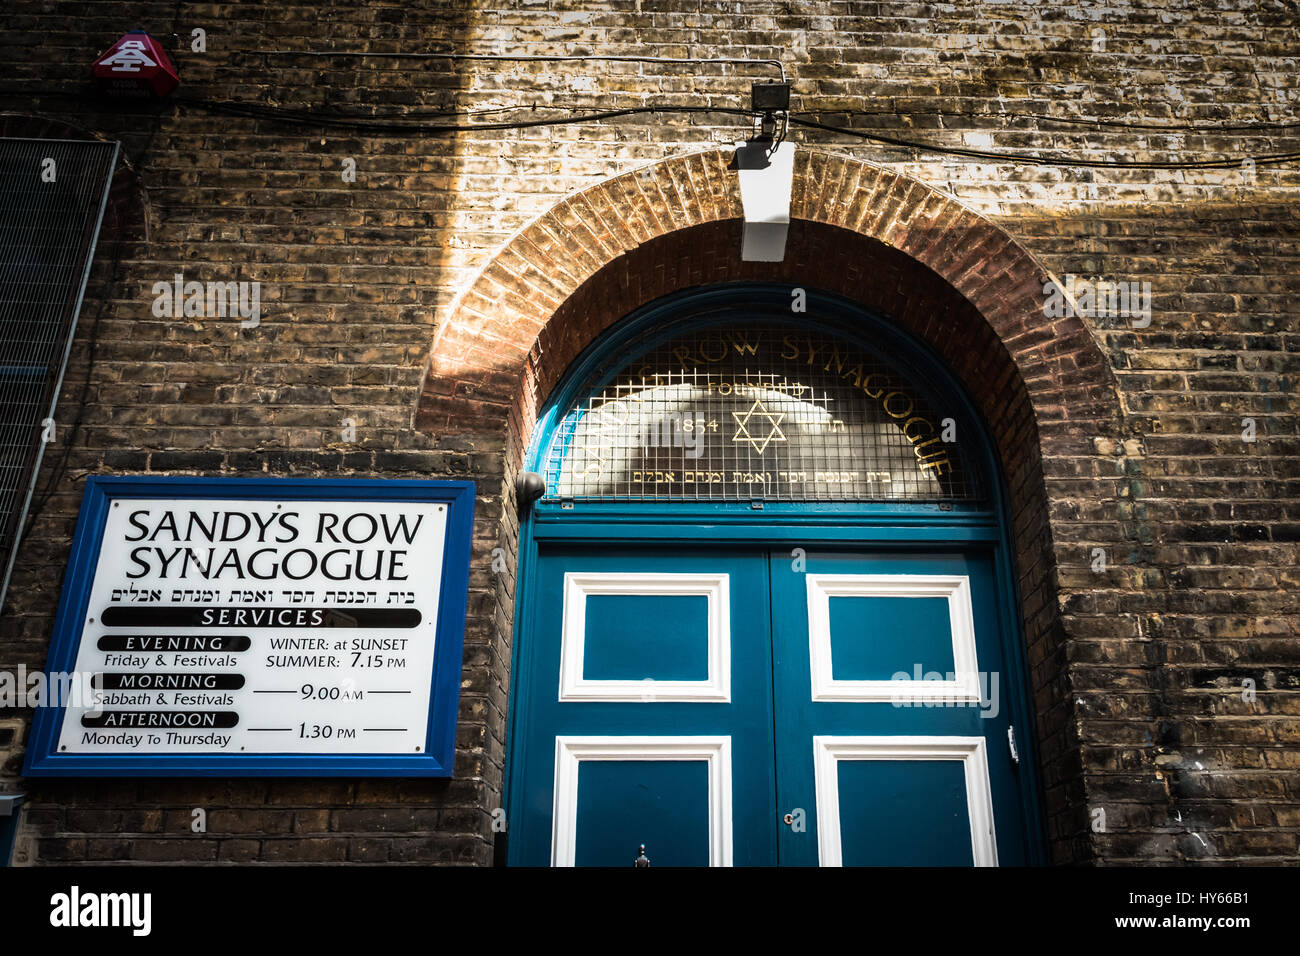 La entrada a la sinagoga Sandy's Row es una sinagoga histórica catalogada de grado II en Spitalfields, en el extremo este de Londres, Inglaterra, Reino Unido Foto de stock